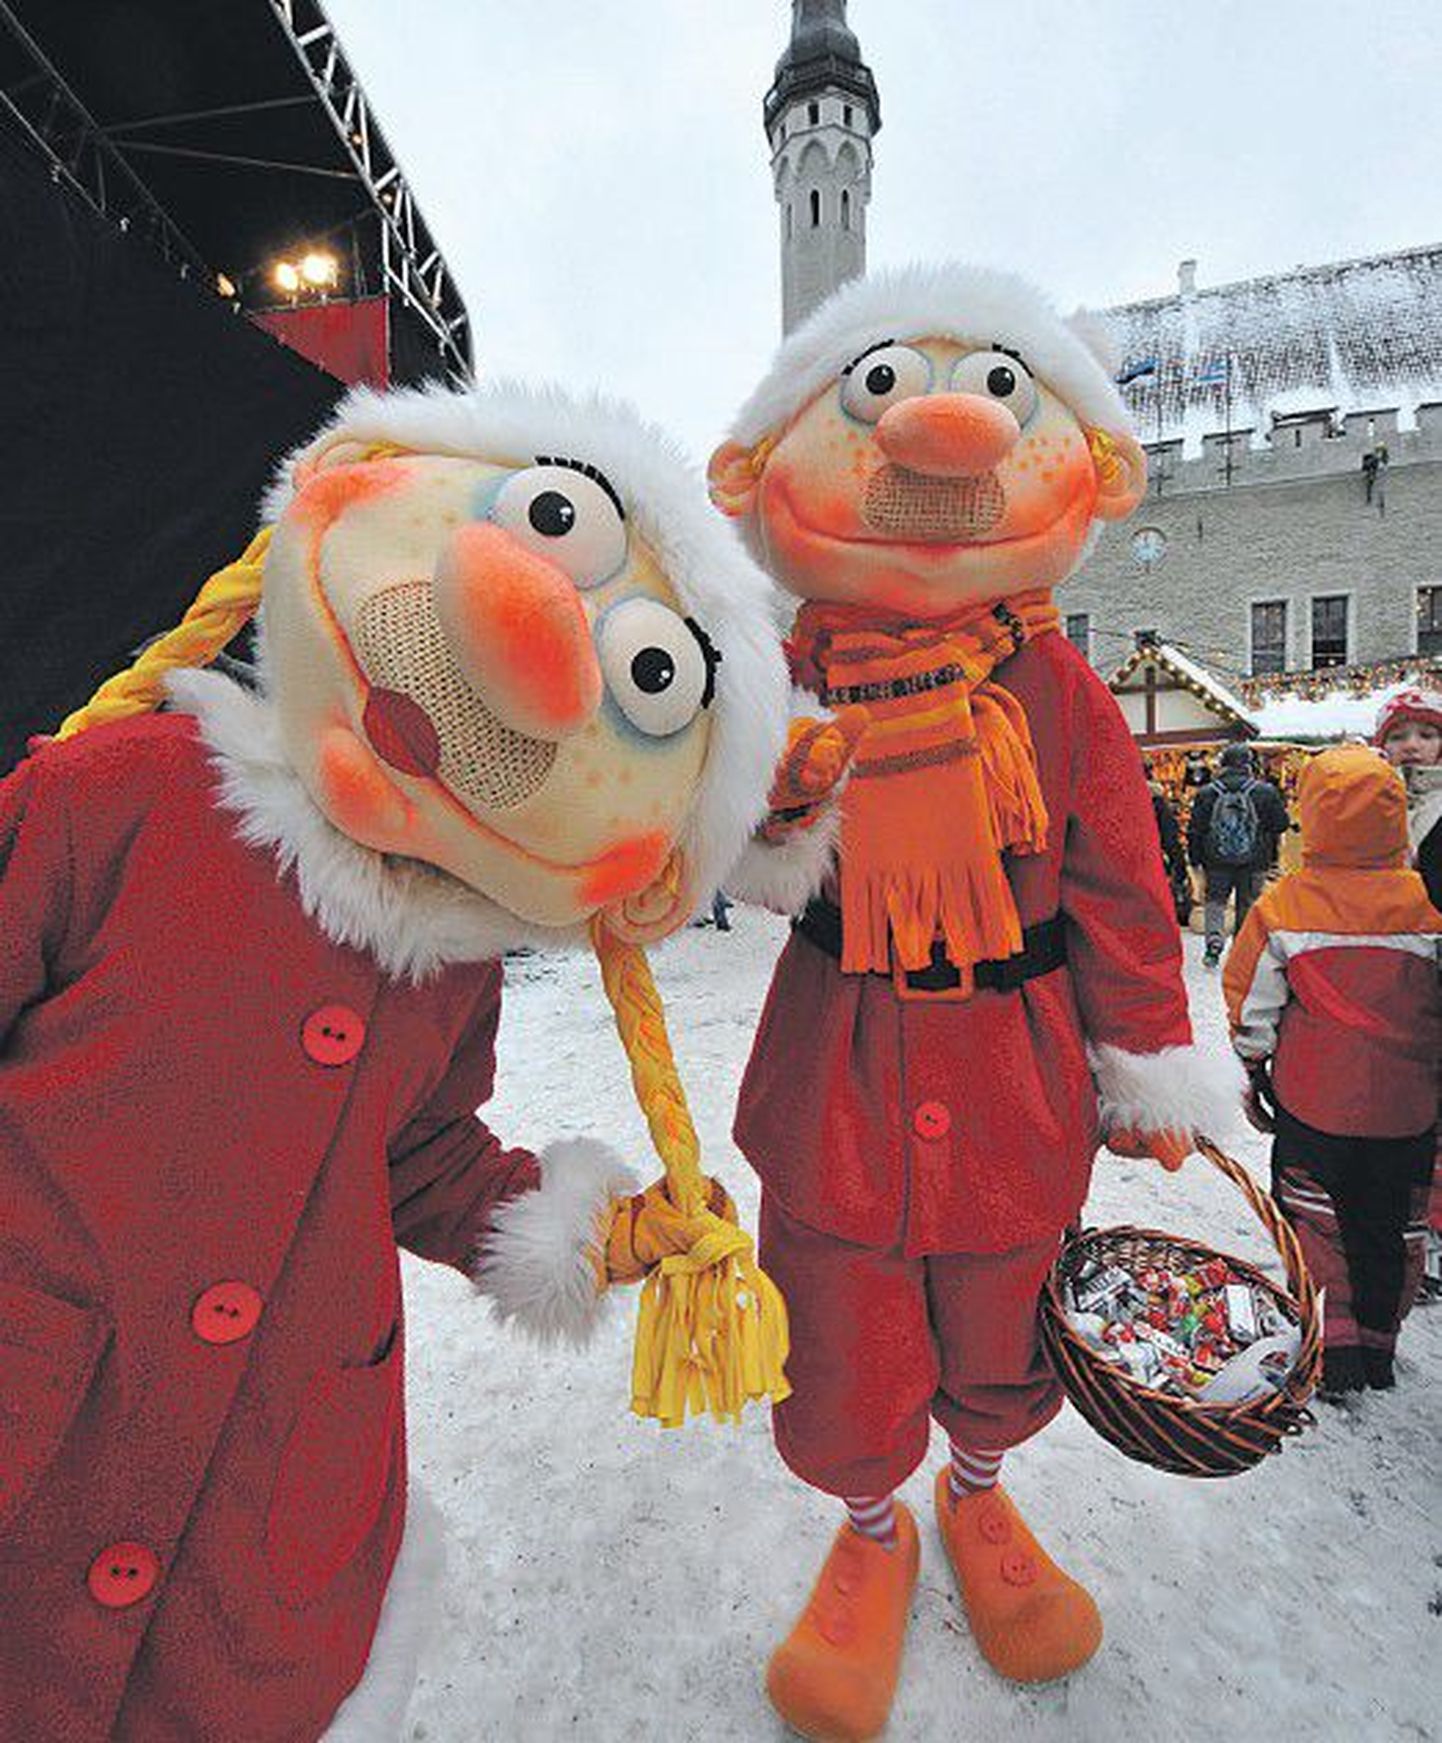 В прошлом году рождественская ярмарка, которая работала на Ратушной площади столицы, пользовалась у иностранных туристов большой популярностью.